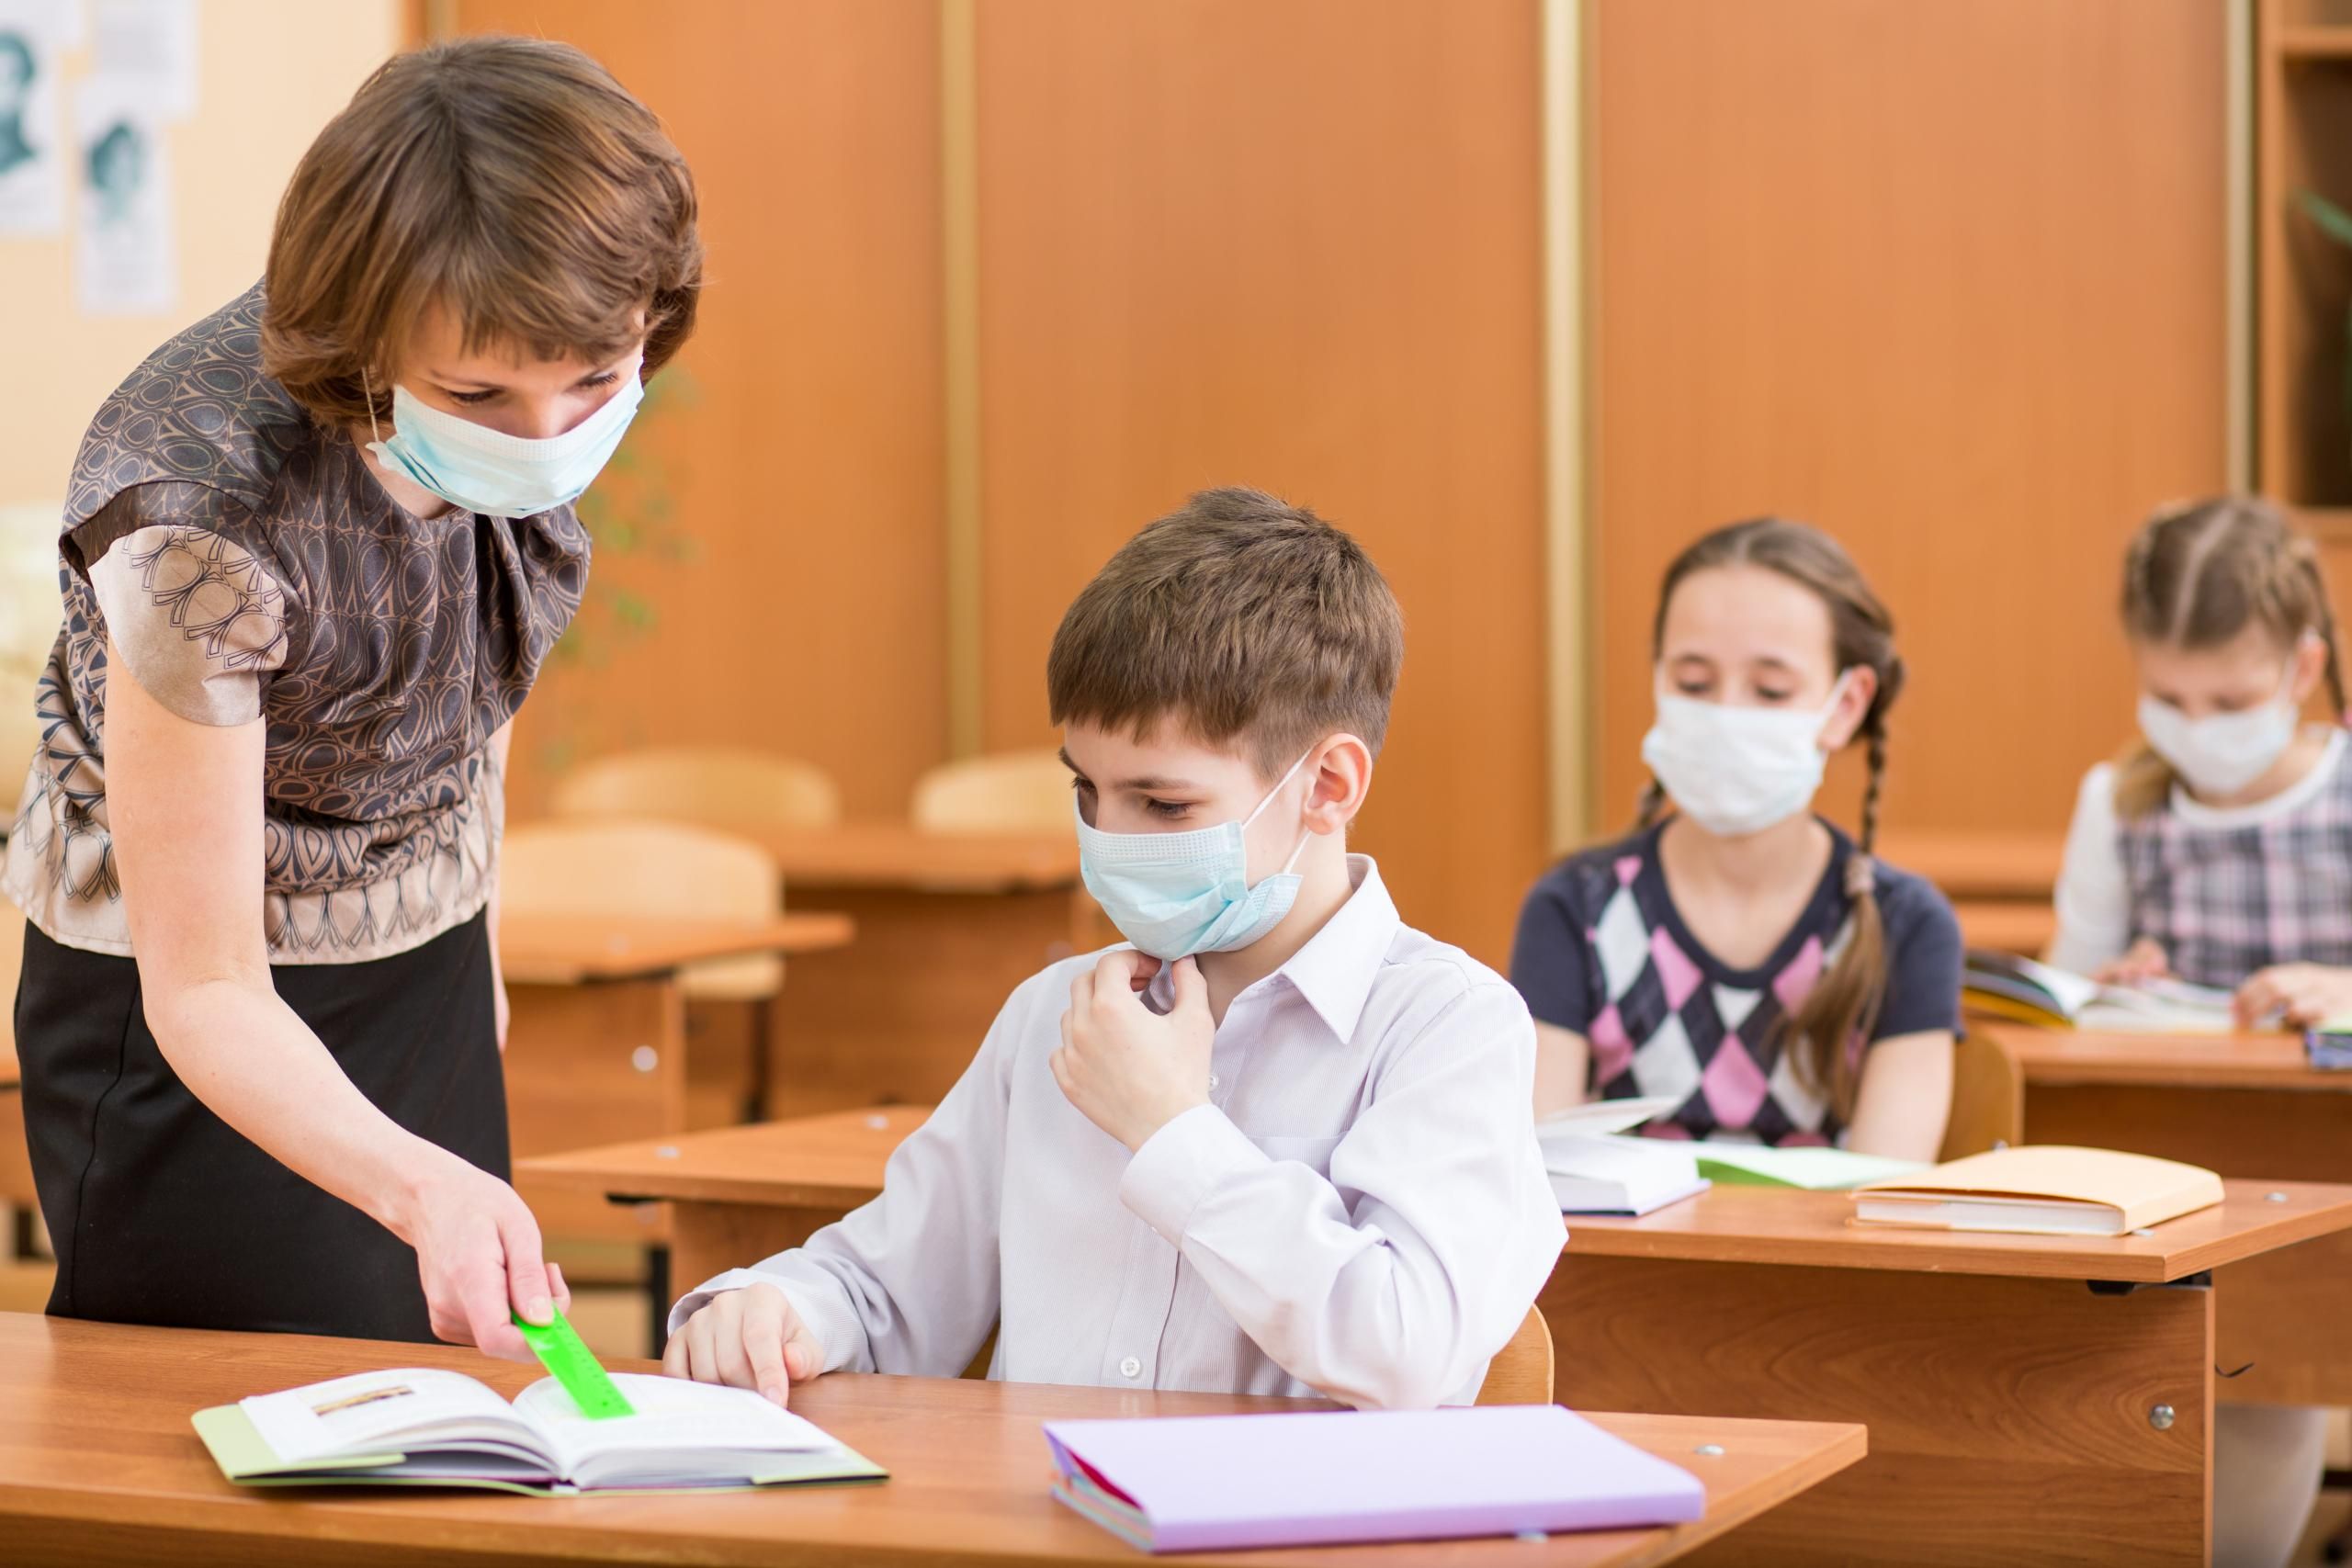 МОН не будет будет обеспечивать школы масками и антисептиками